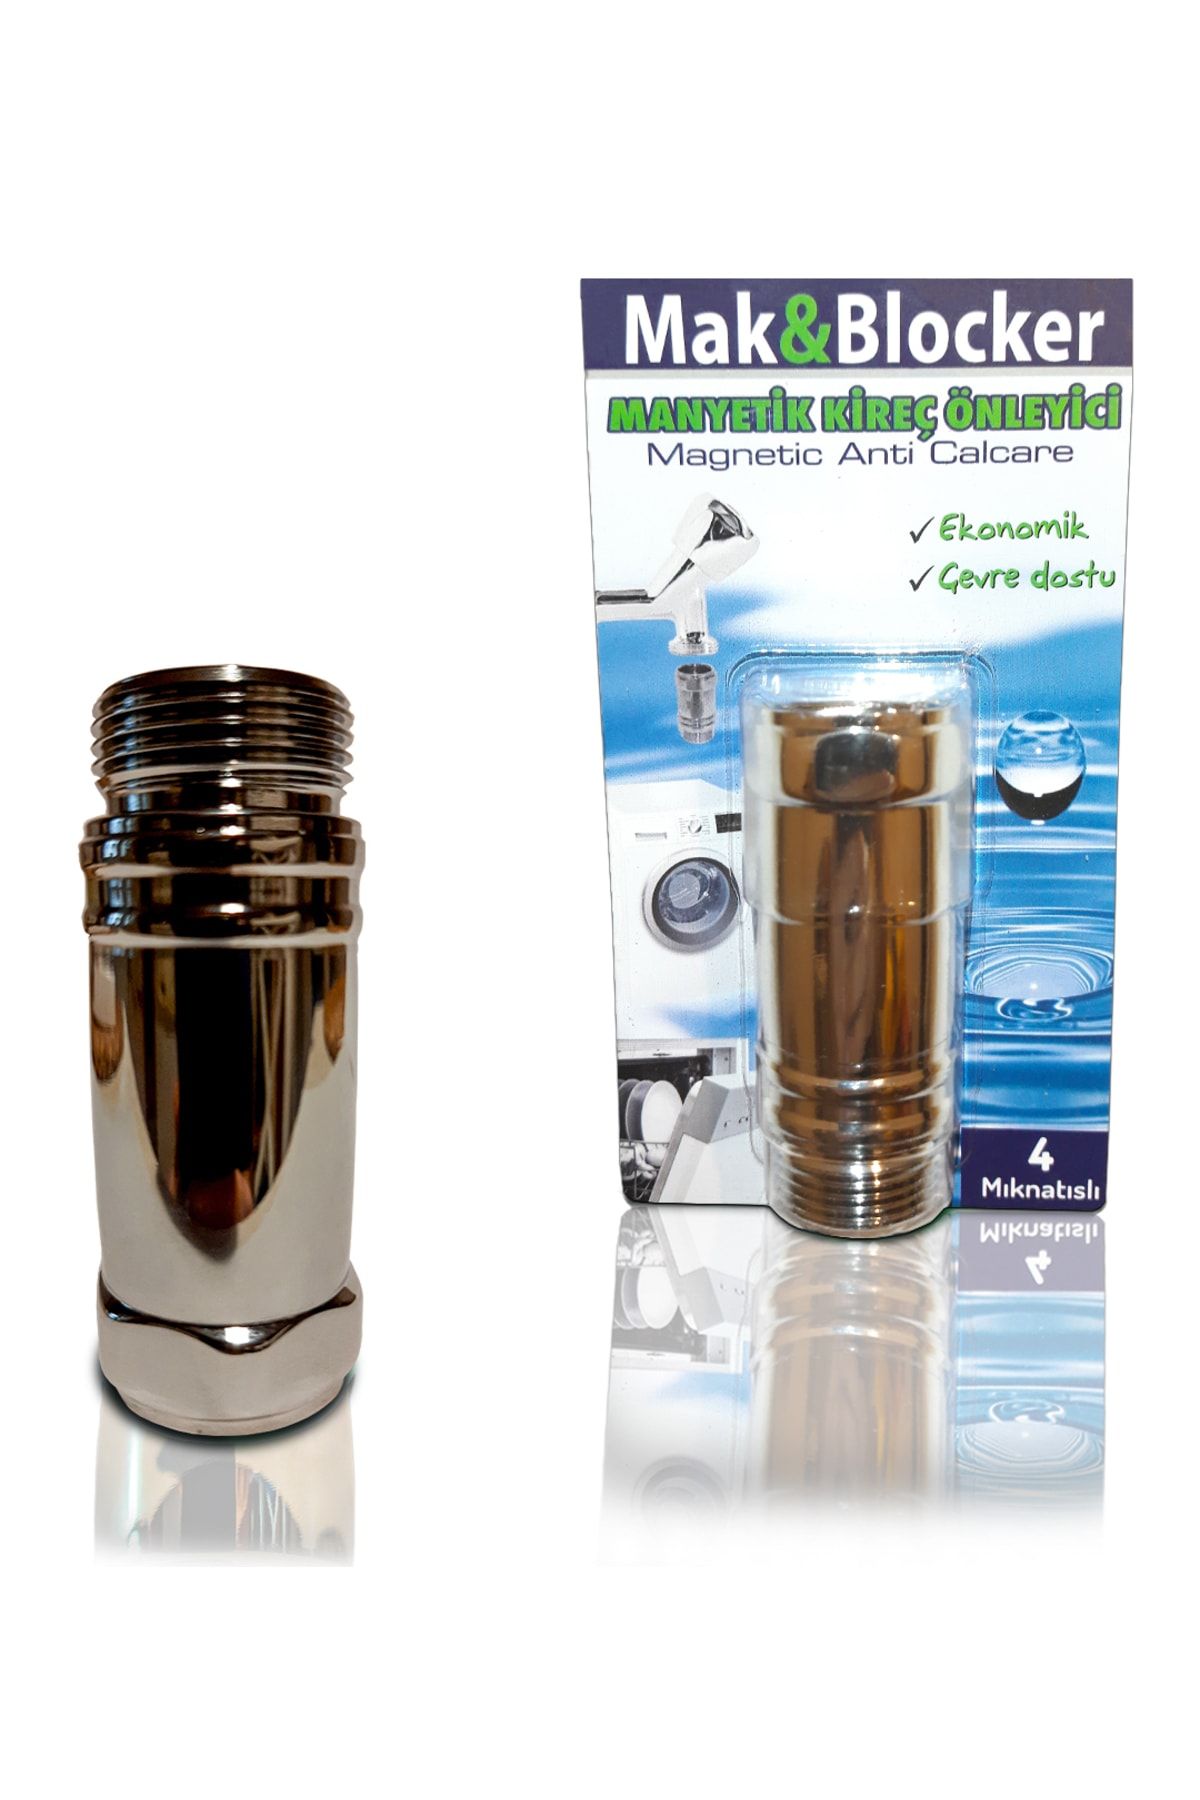 Mak & Blocker Manyetik Kireç Önleyici 4 Mıktanıslı